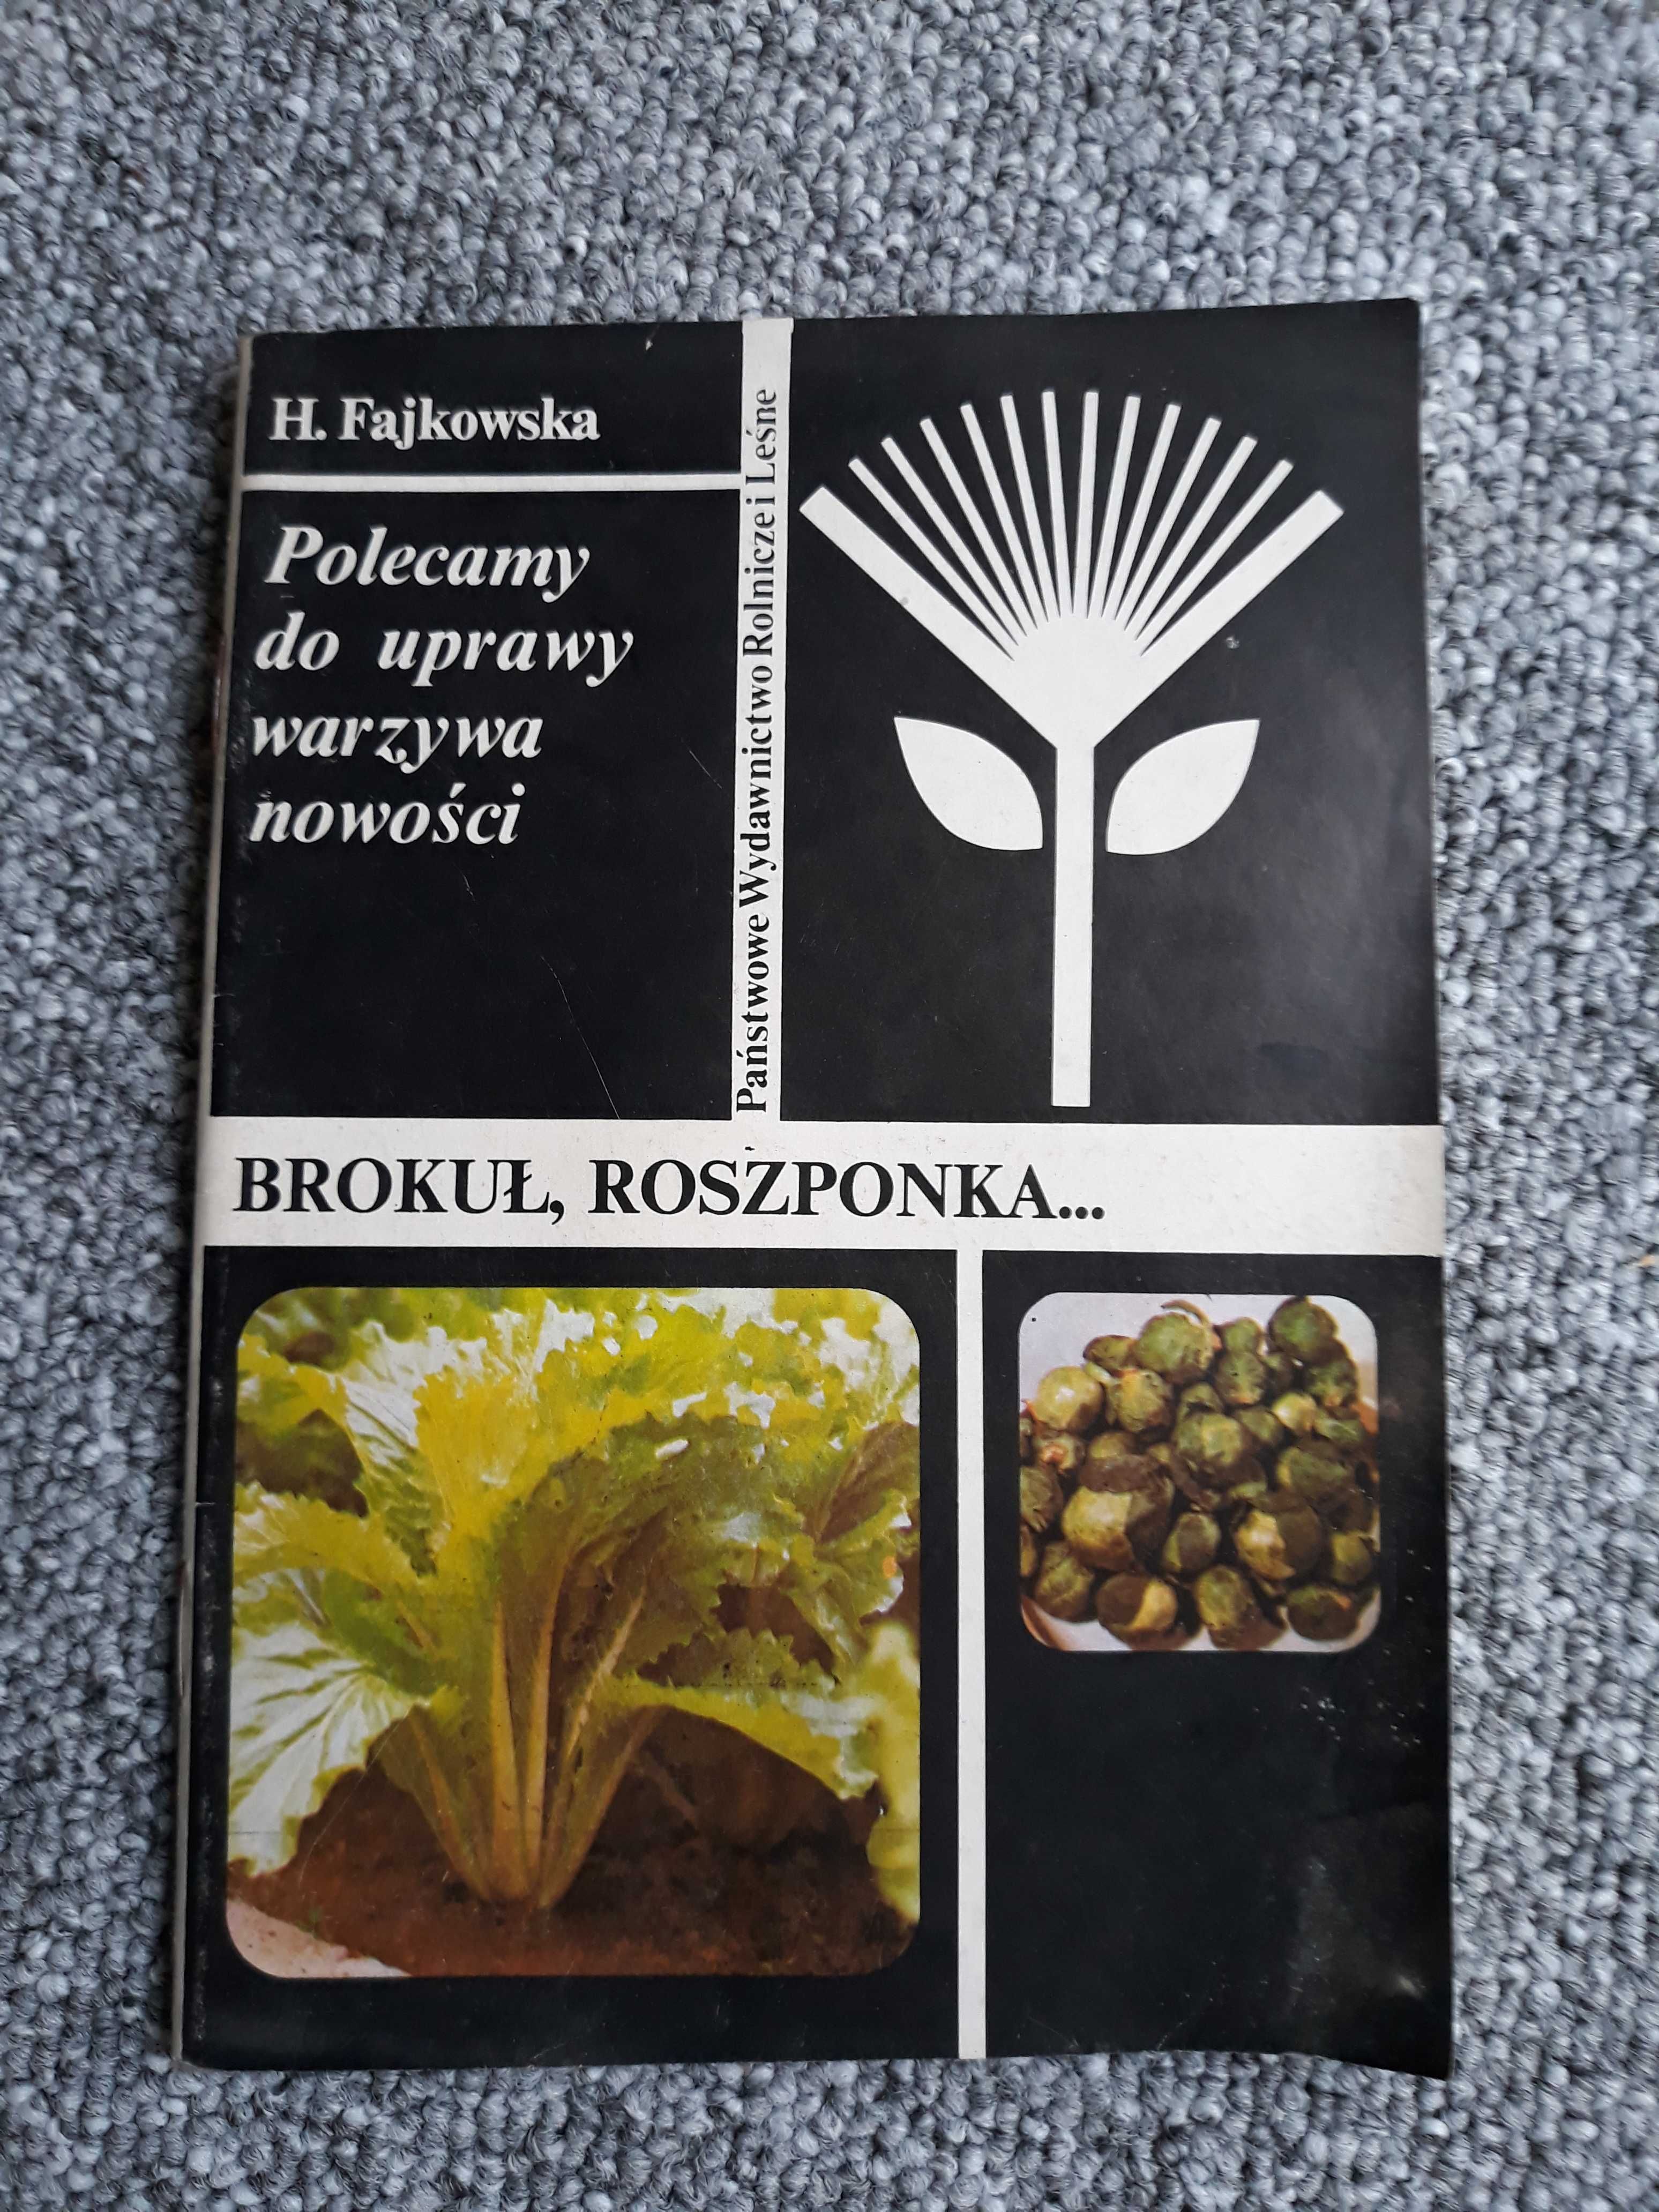 Brokuł roszponka - Fajkowska